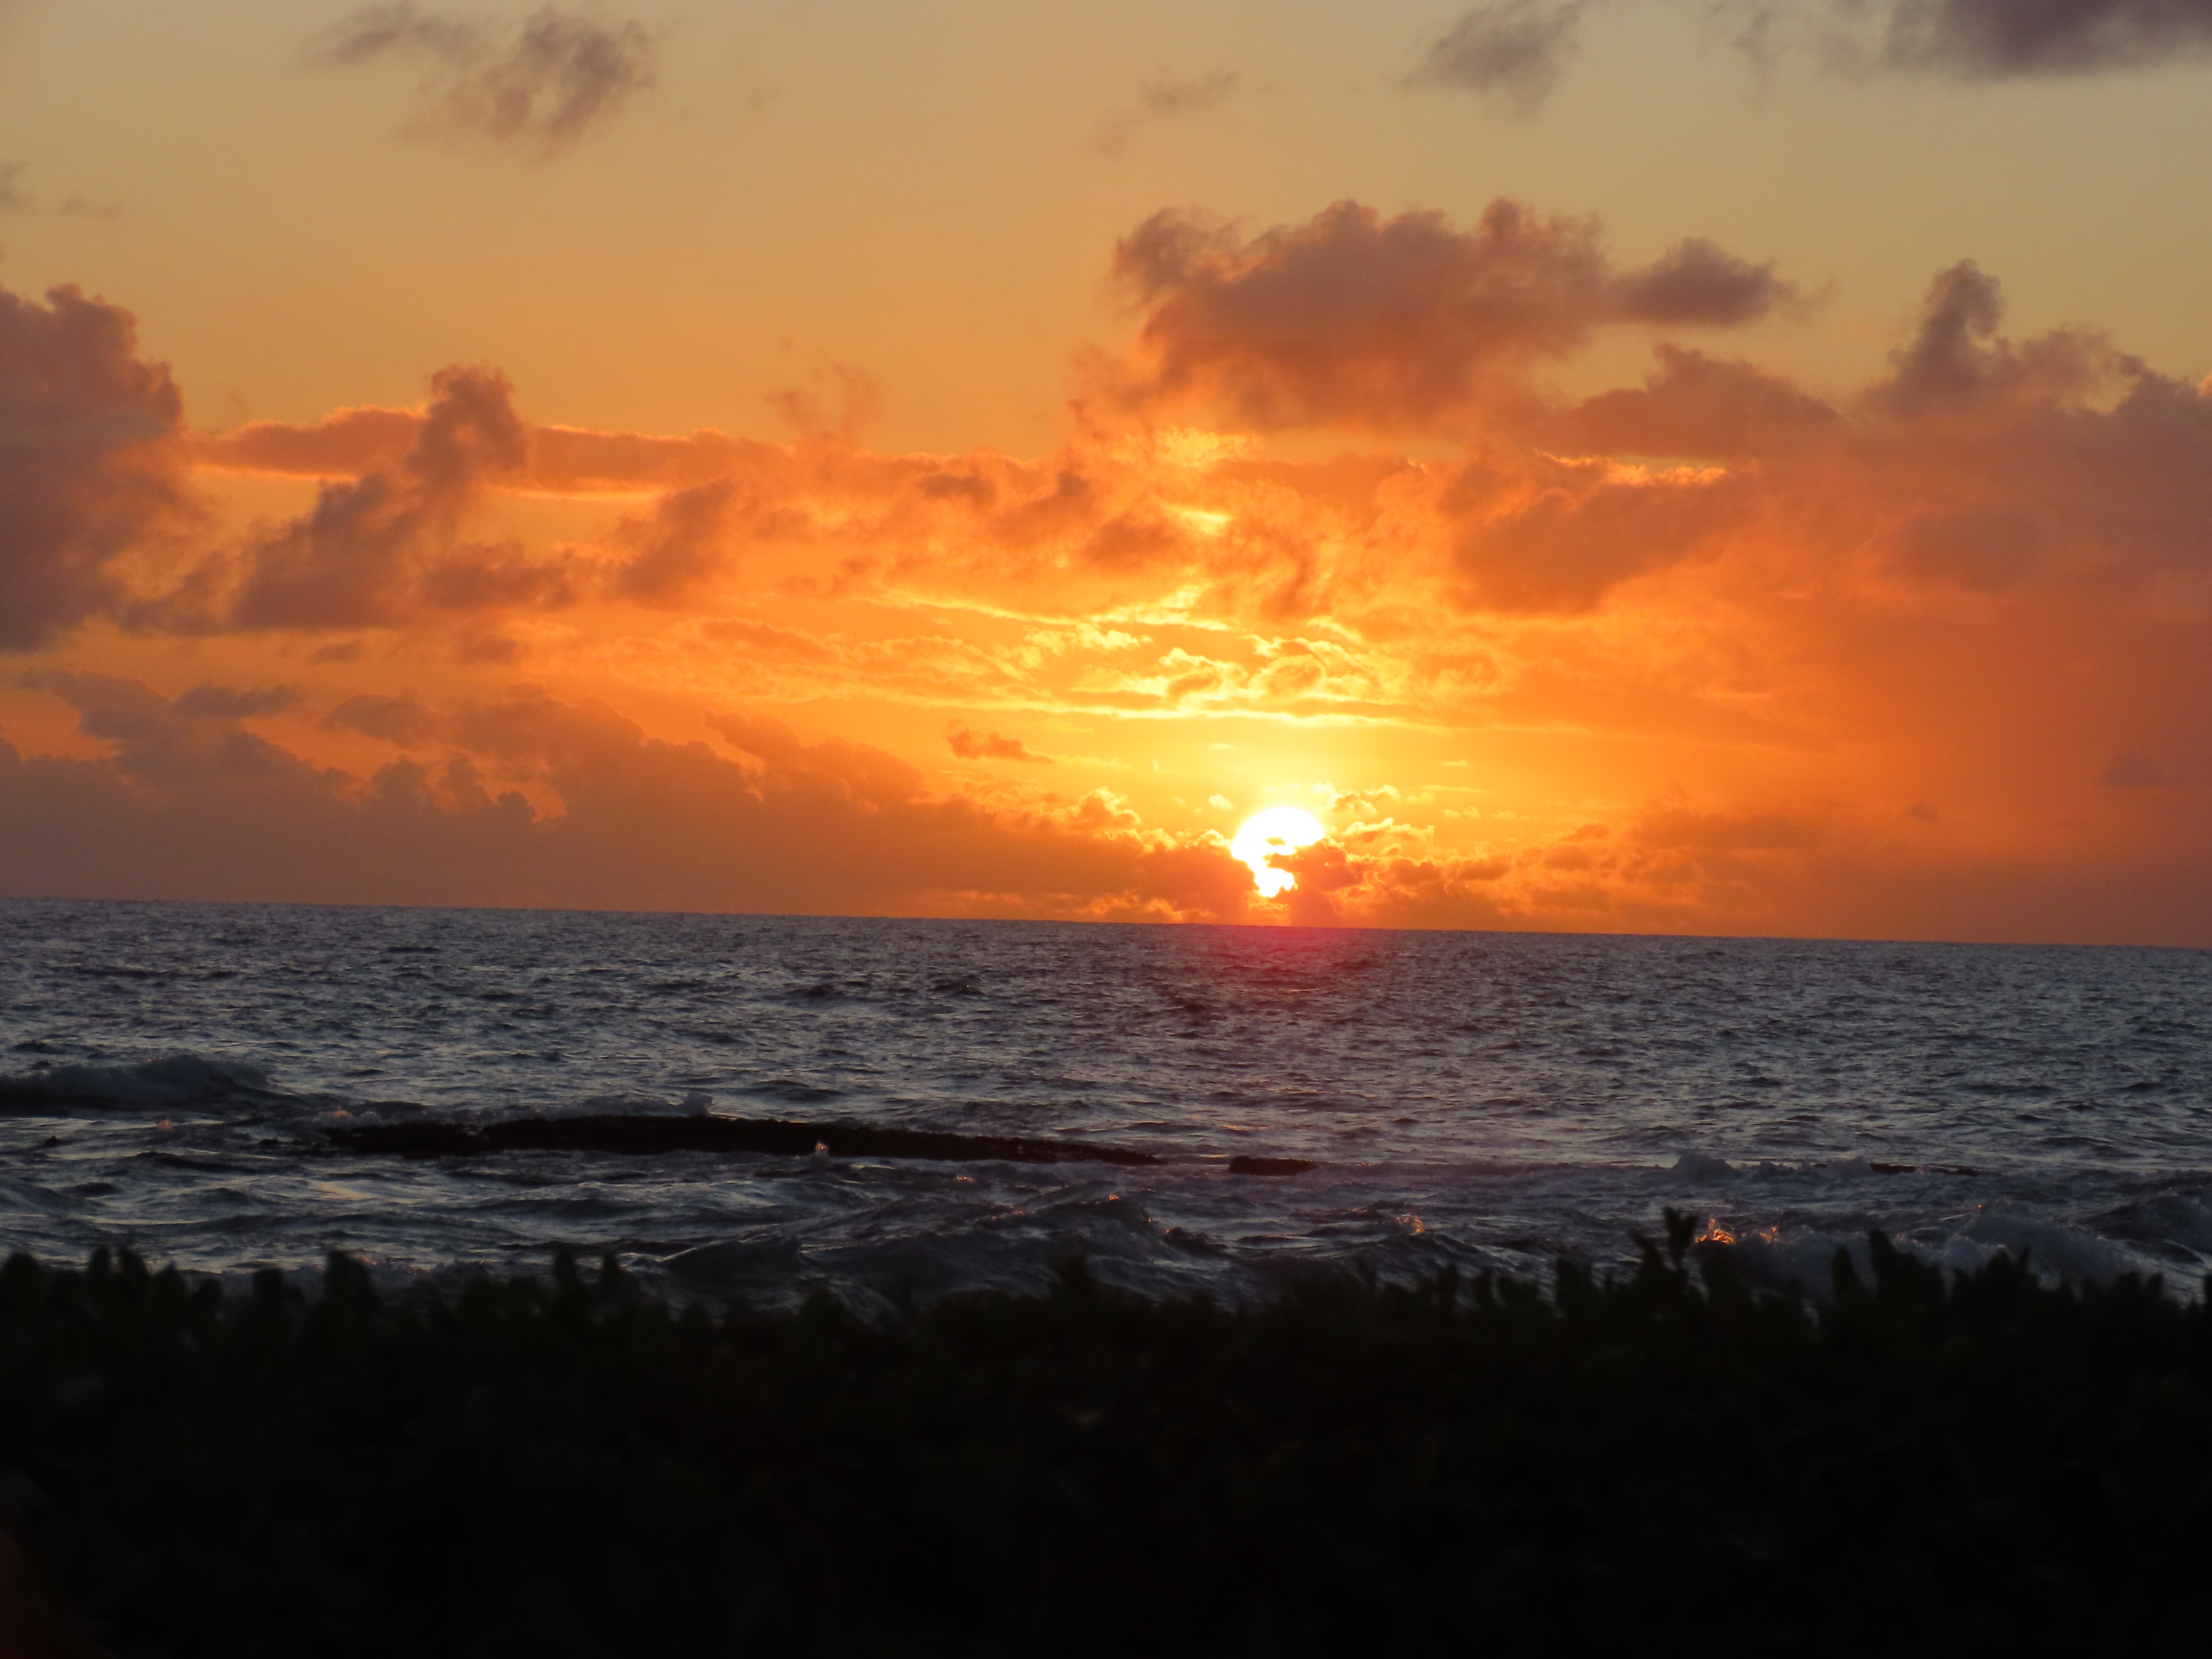 Sunset at Koloa on the Hawaiian island of Kauai